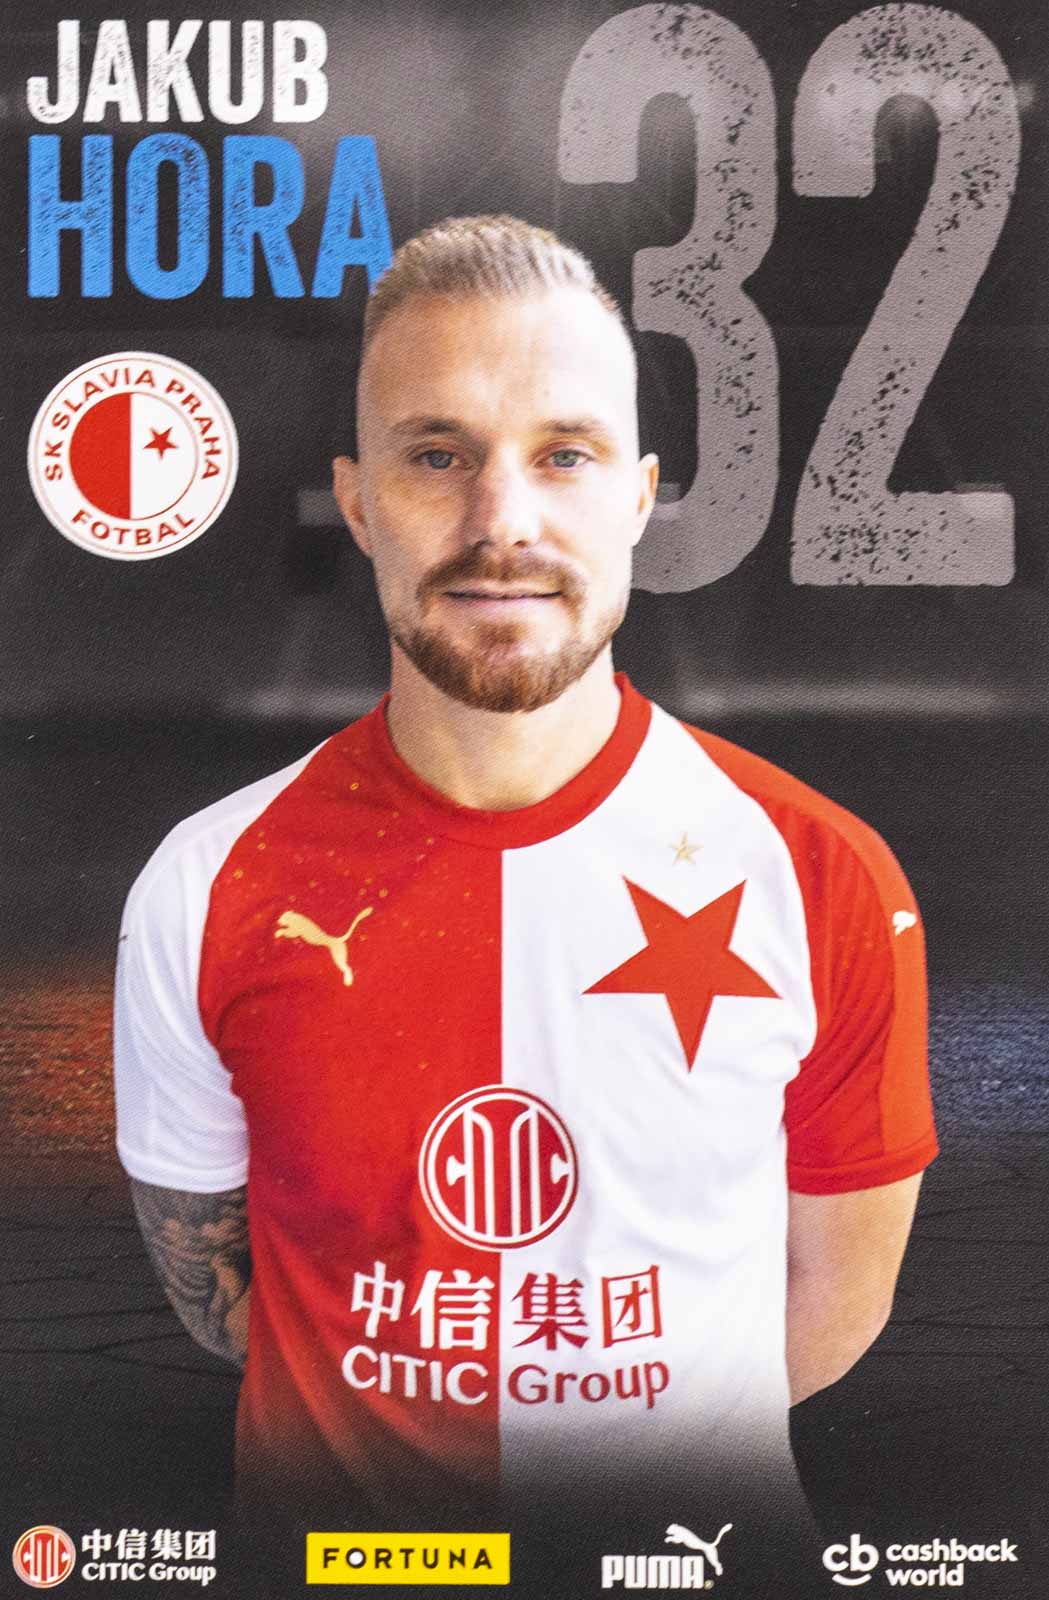 Podpisová karta, Jakub Hora, SK Slavia Praha